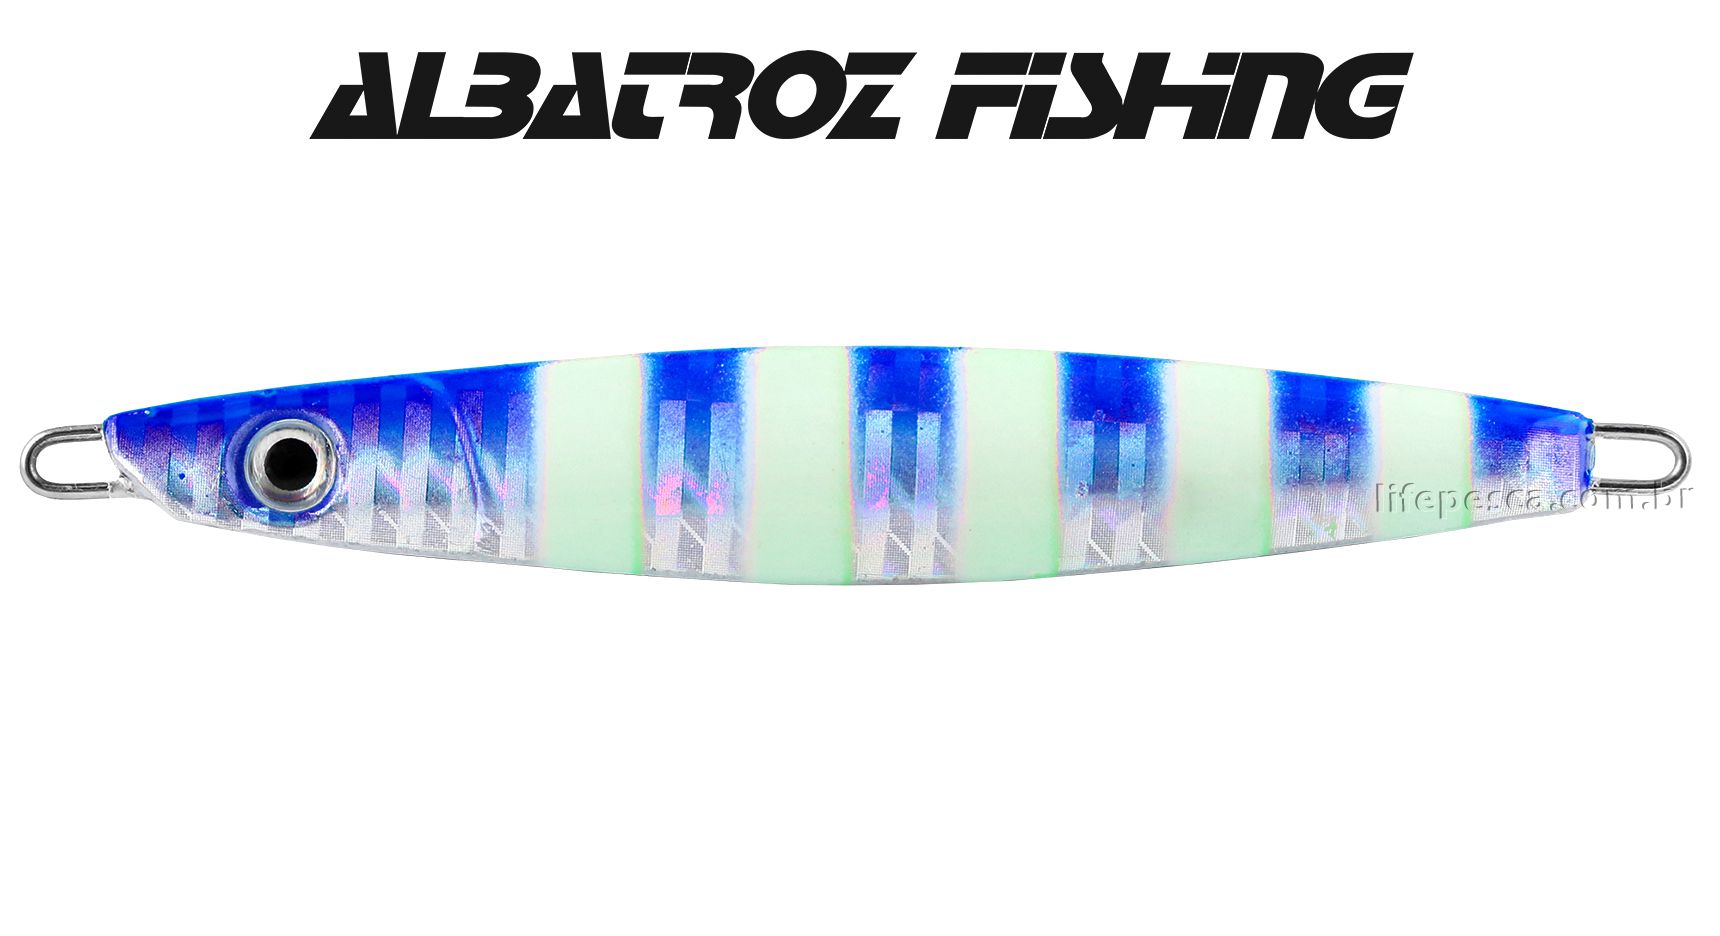 Isca Artificial Albatroz Fishing  Jumping Jig Dragon (28g) - Várias Cores  - Life Pesca - Sua loja de Pesca, Camping e Lazer